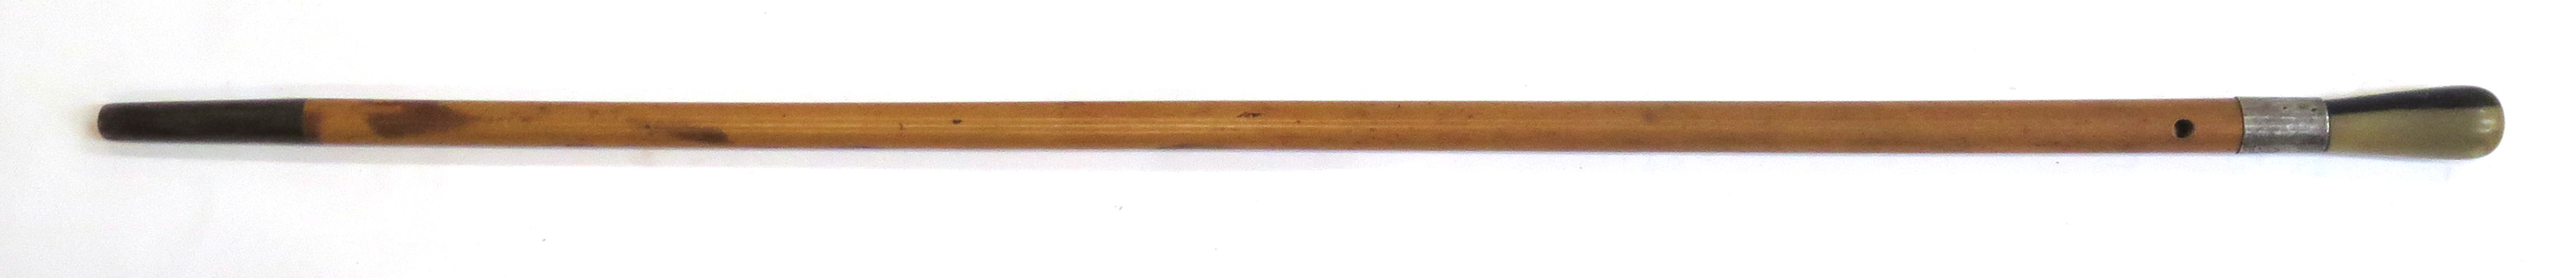 Käpp, bambu och horn med silverbeslag, 1900-talets 1 hälft, _13003a_lg.jpeg